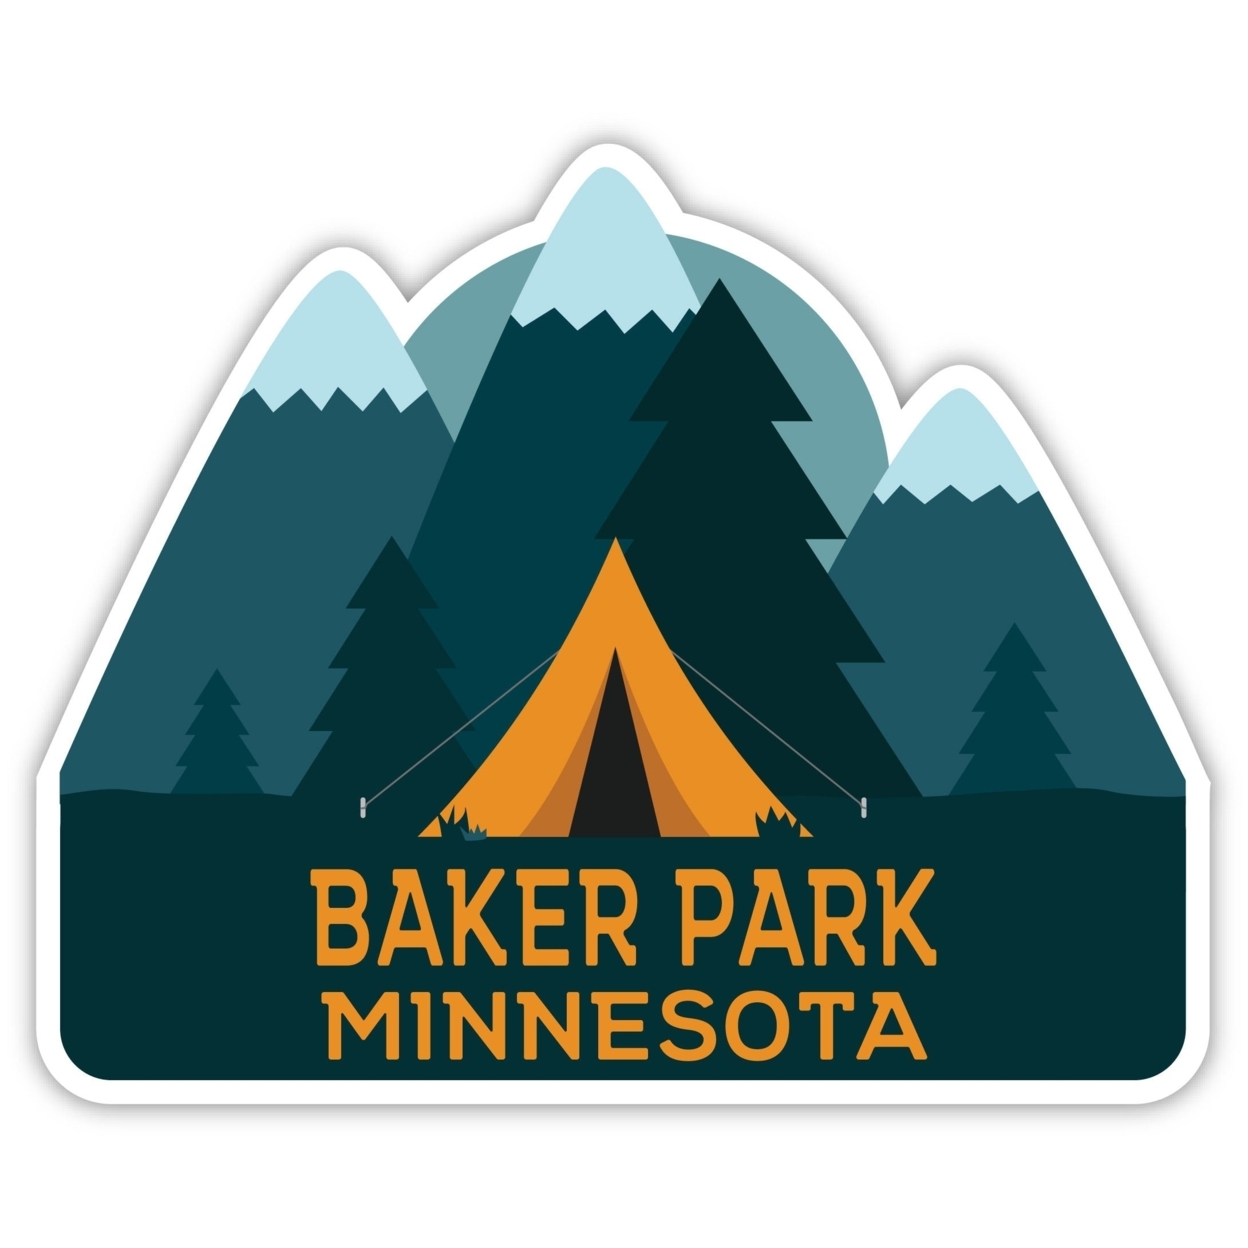 Baker Park Minnesota Souvenir Decorative Stickers (Choose Theme And Size) - Single Unit, 2-Inch, Tent